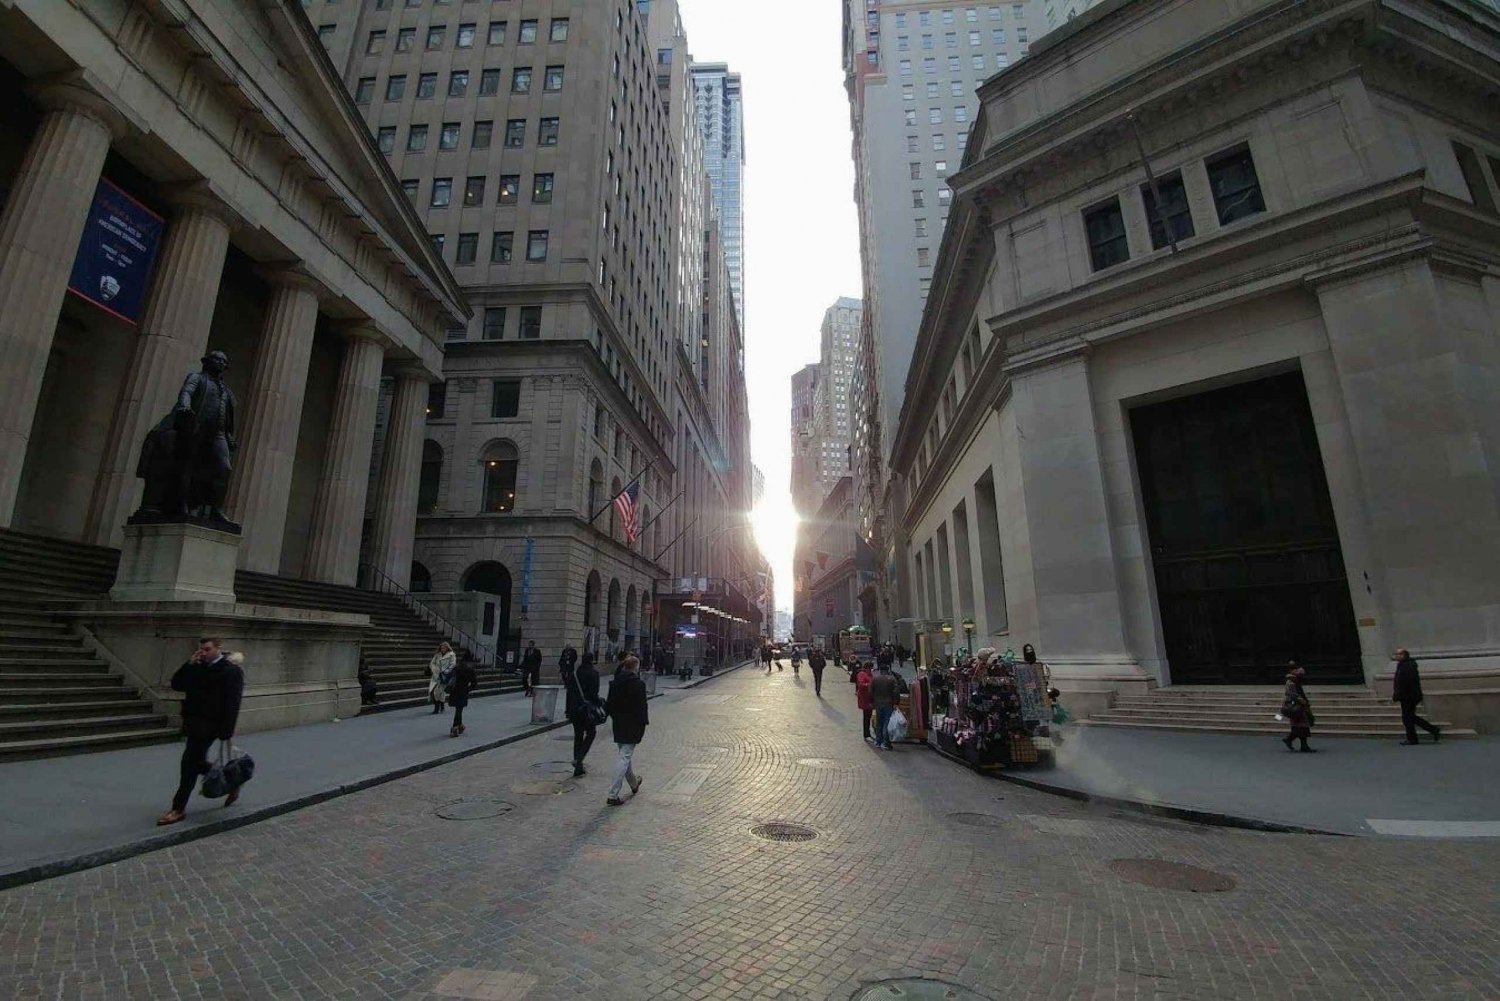 Erforsche die Geschichte der Wall Street: Eine selbstgeführte Audiotour